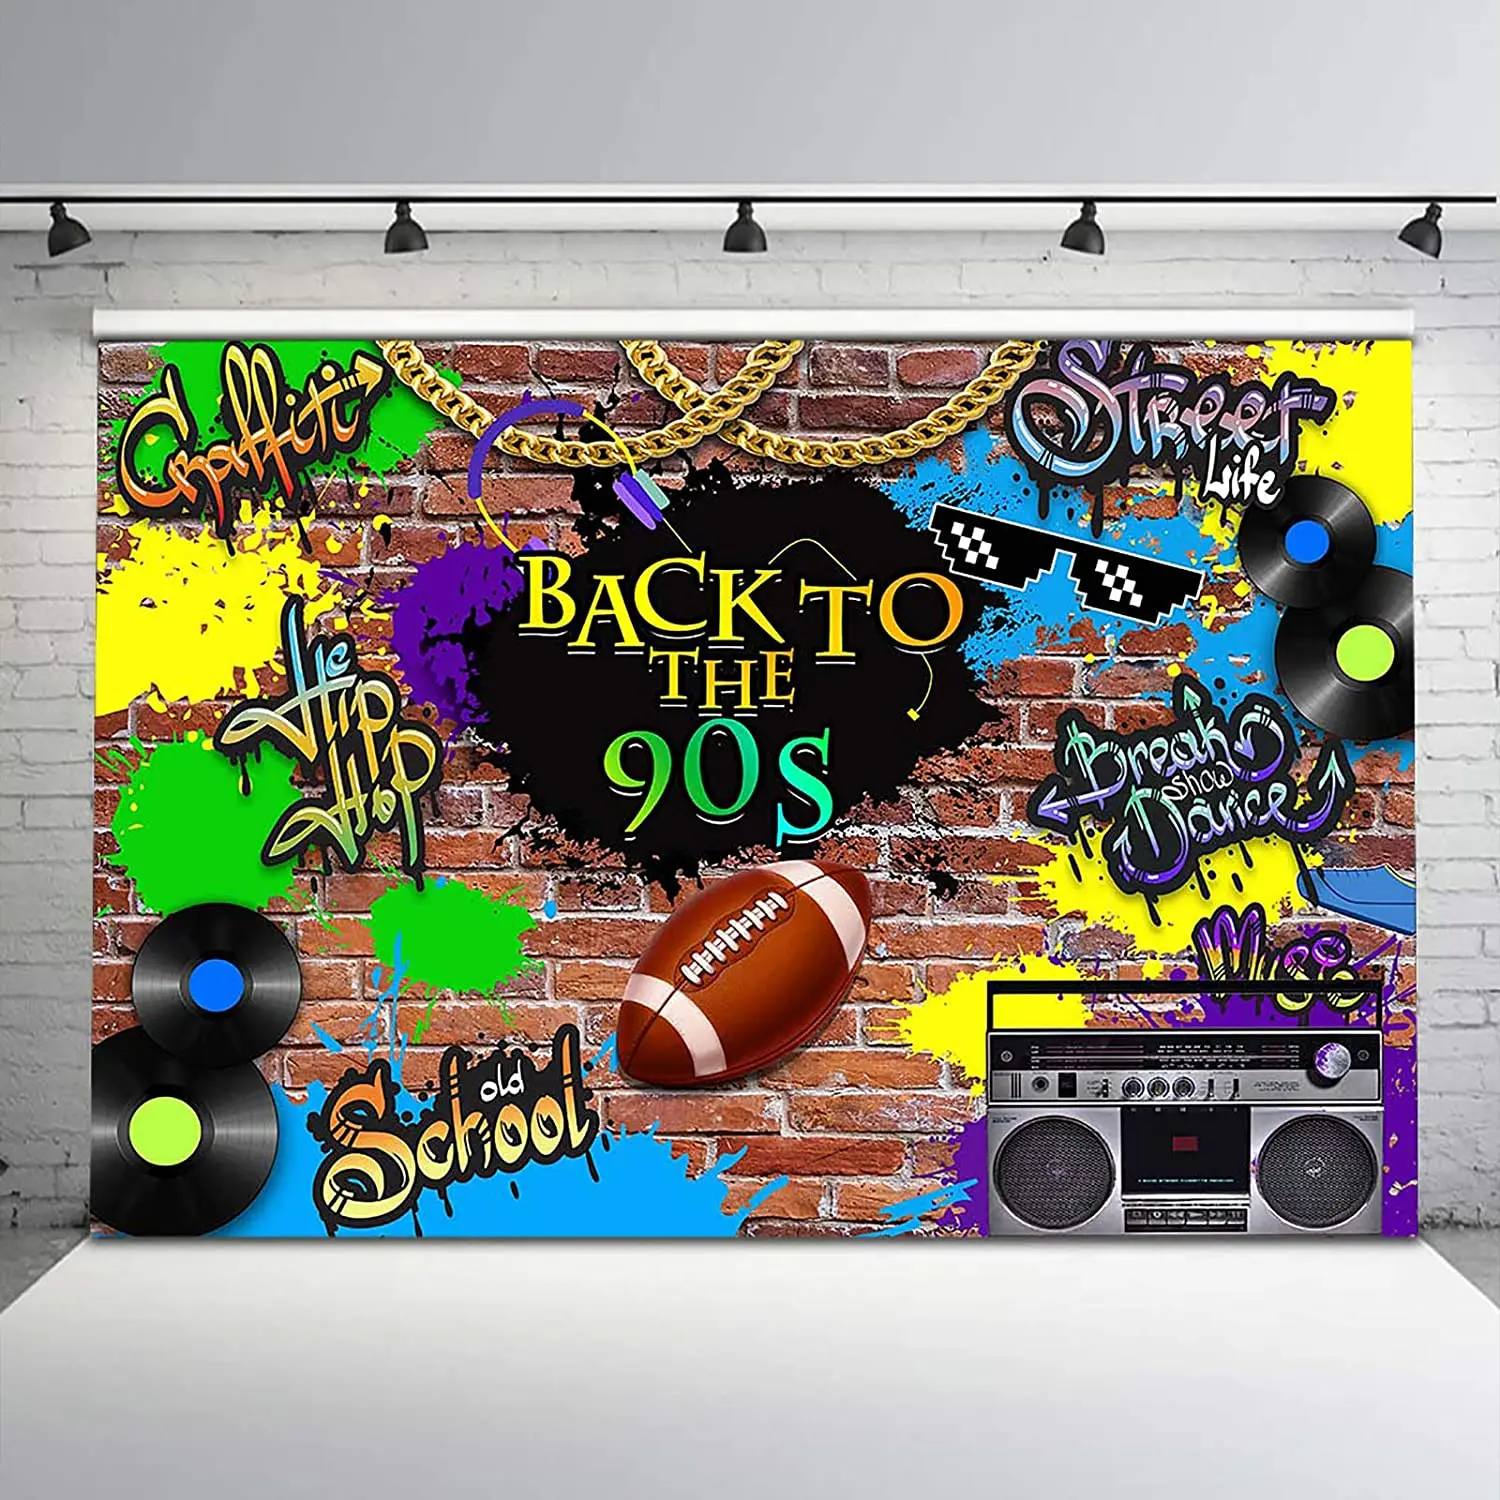 

Фон в стиле ретро 90-х граффити кирпичная стена фон для взрослых День Рождения Декор баннер фото студия стенд реквизит